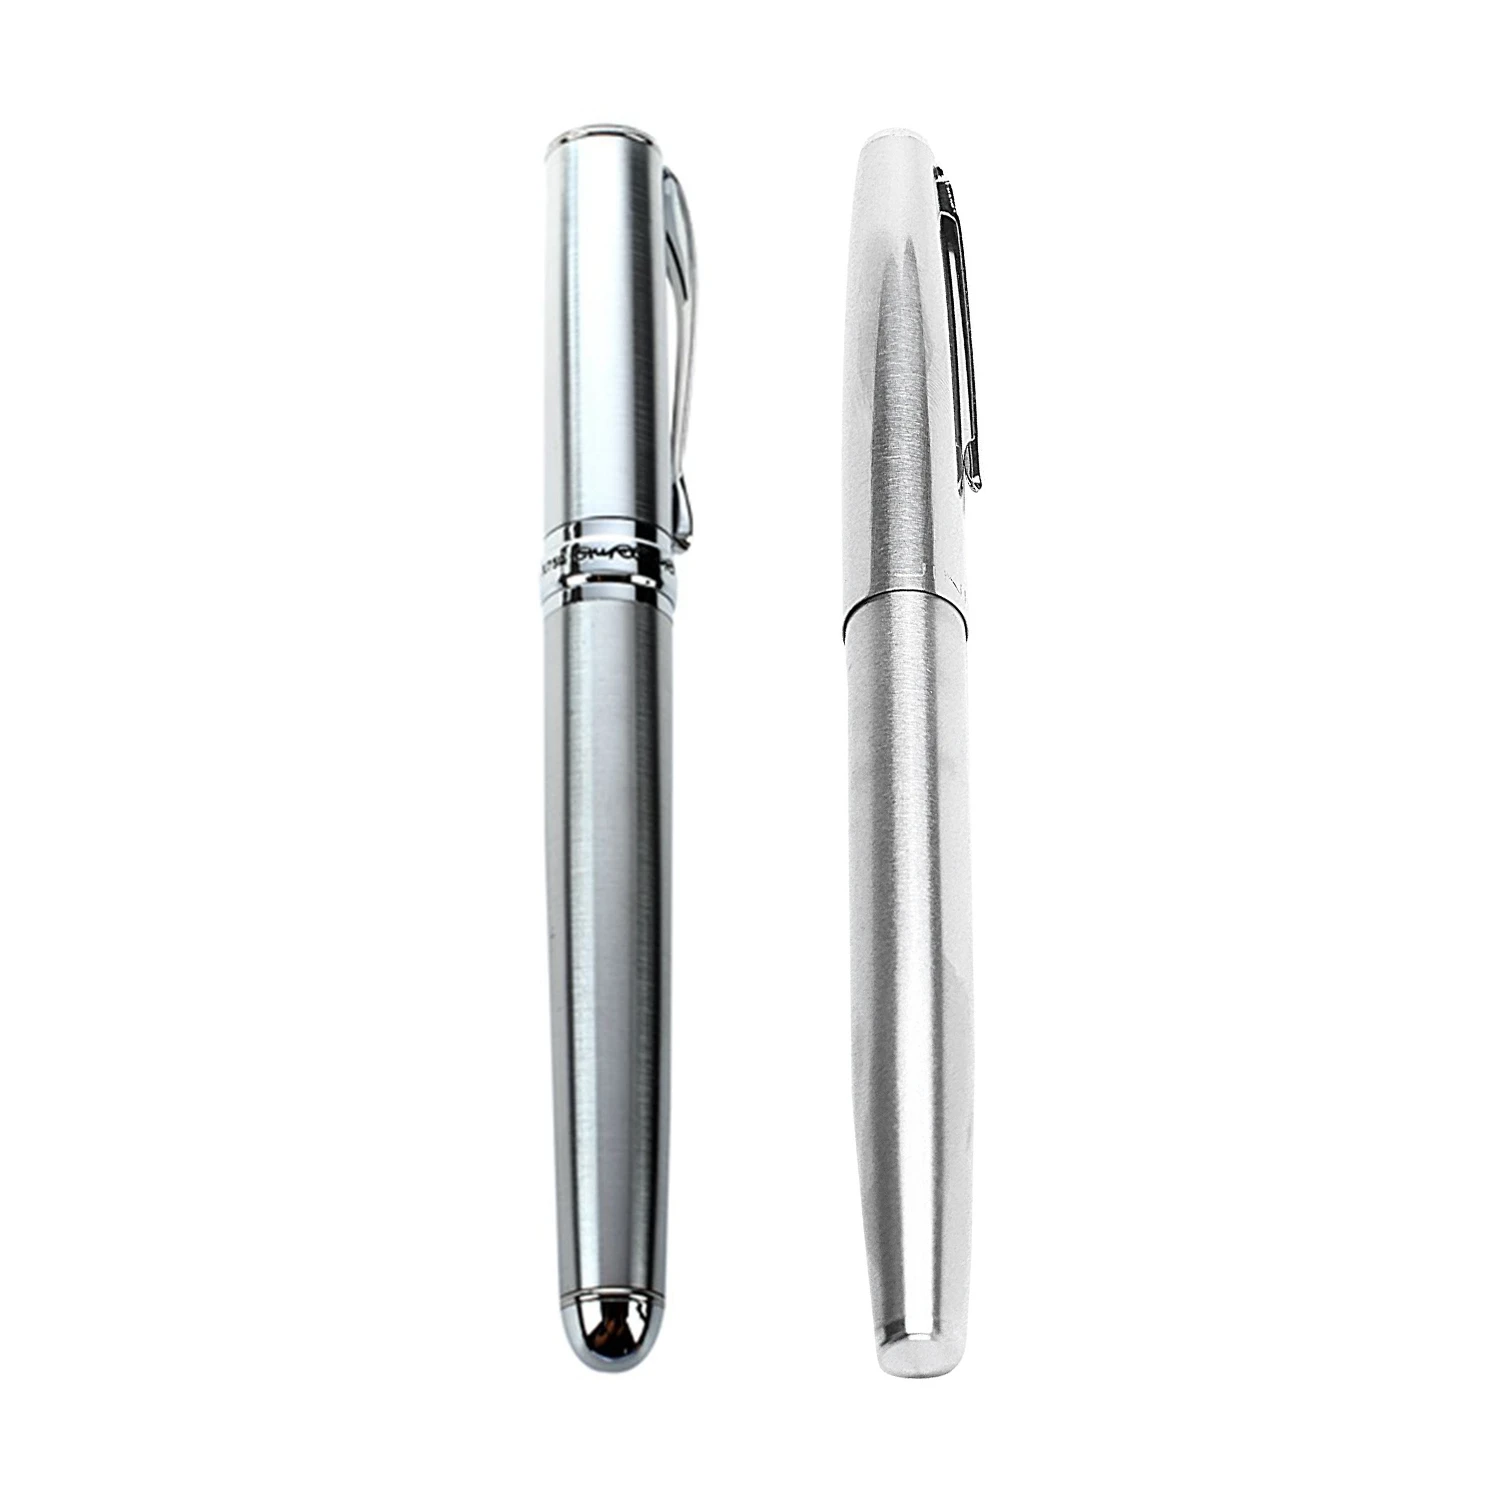 

Перьевая ручка JinHao X750, серебристая ручка CT и 911 стальная перьевая ручка с 0,38 мм дополнительный тонкий наконечник, гладкая чернильная ручка для письма